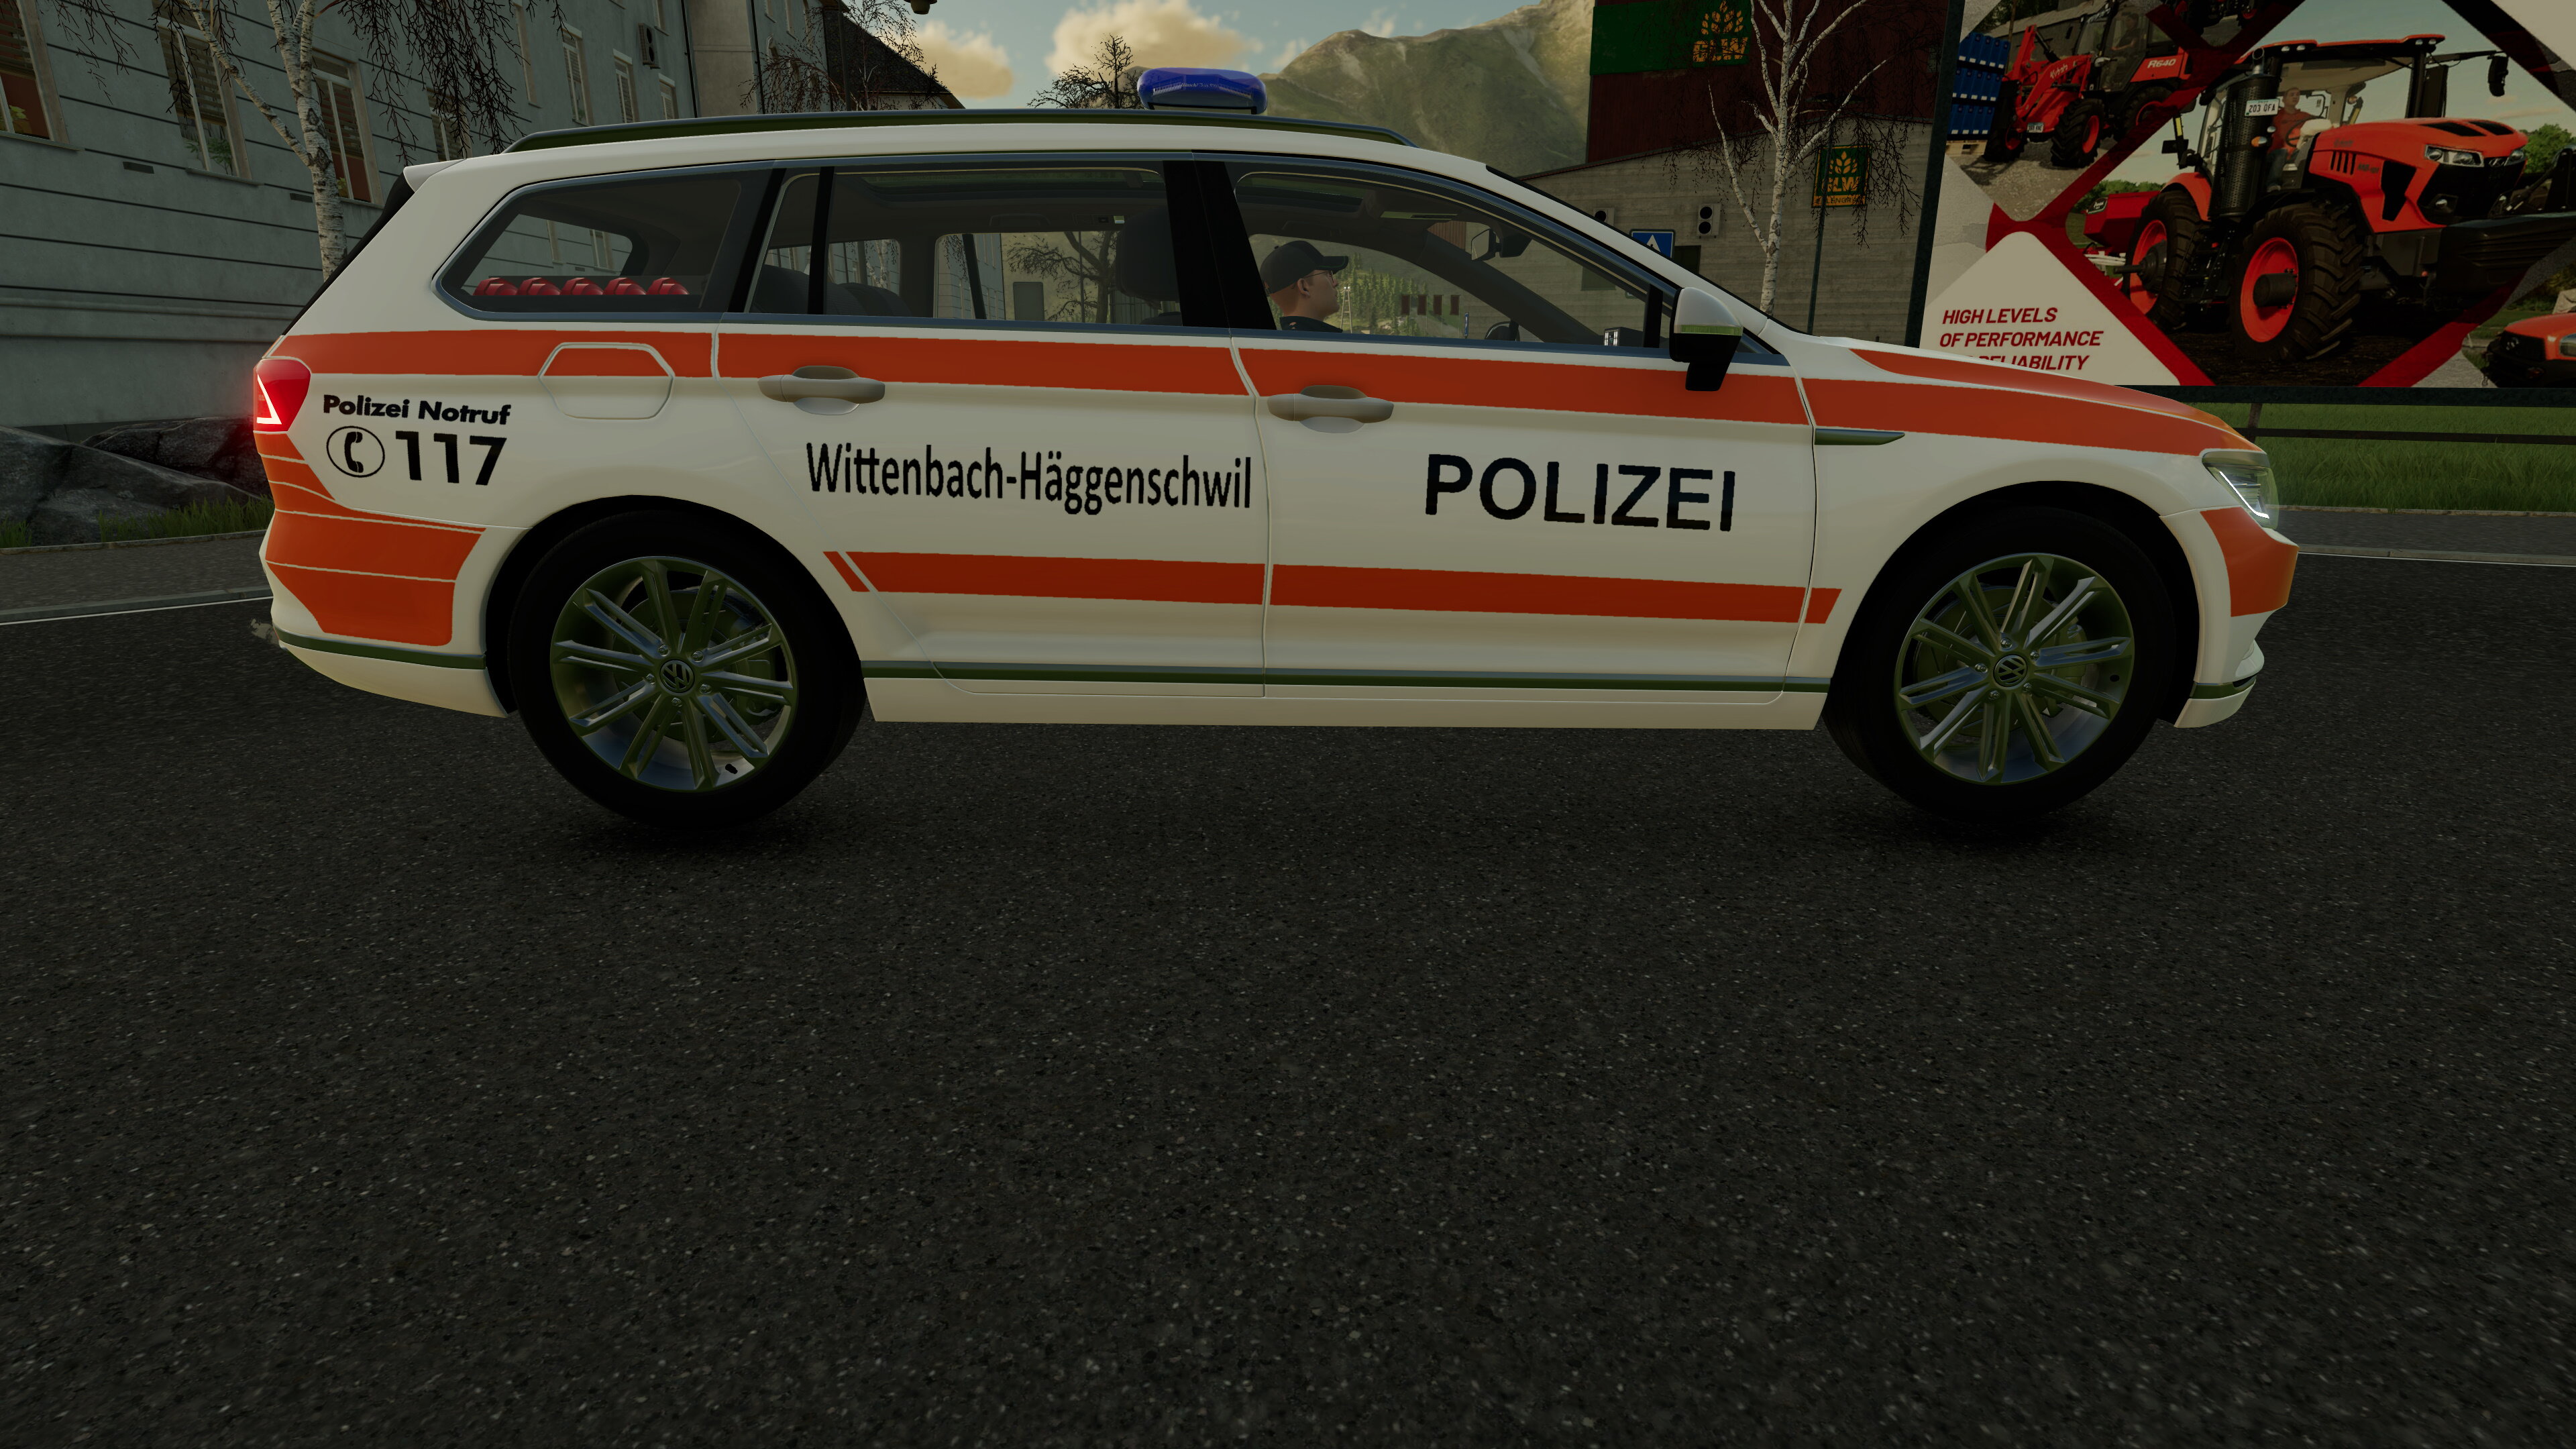 Polizei wittenbach häggenschwil Schweiz